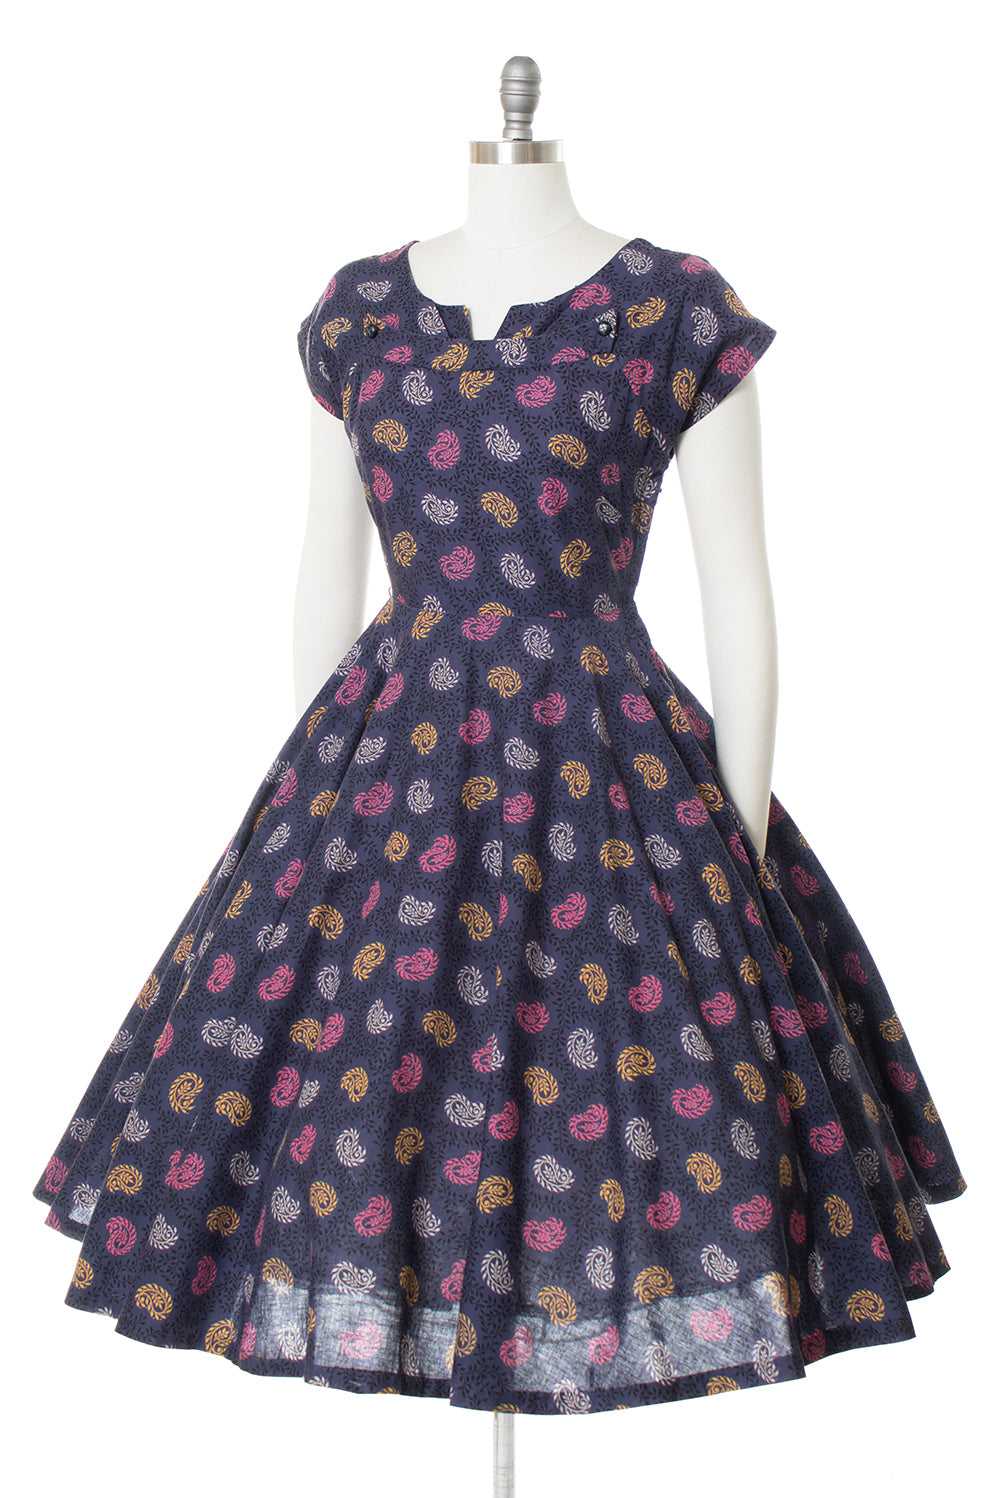 $65 DRESS SALE /// 1950s Paisley Cotton Circle Sk… - image 3